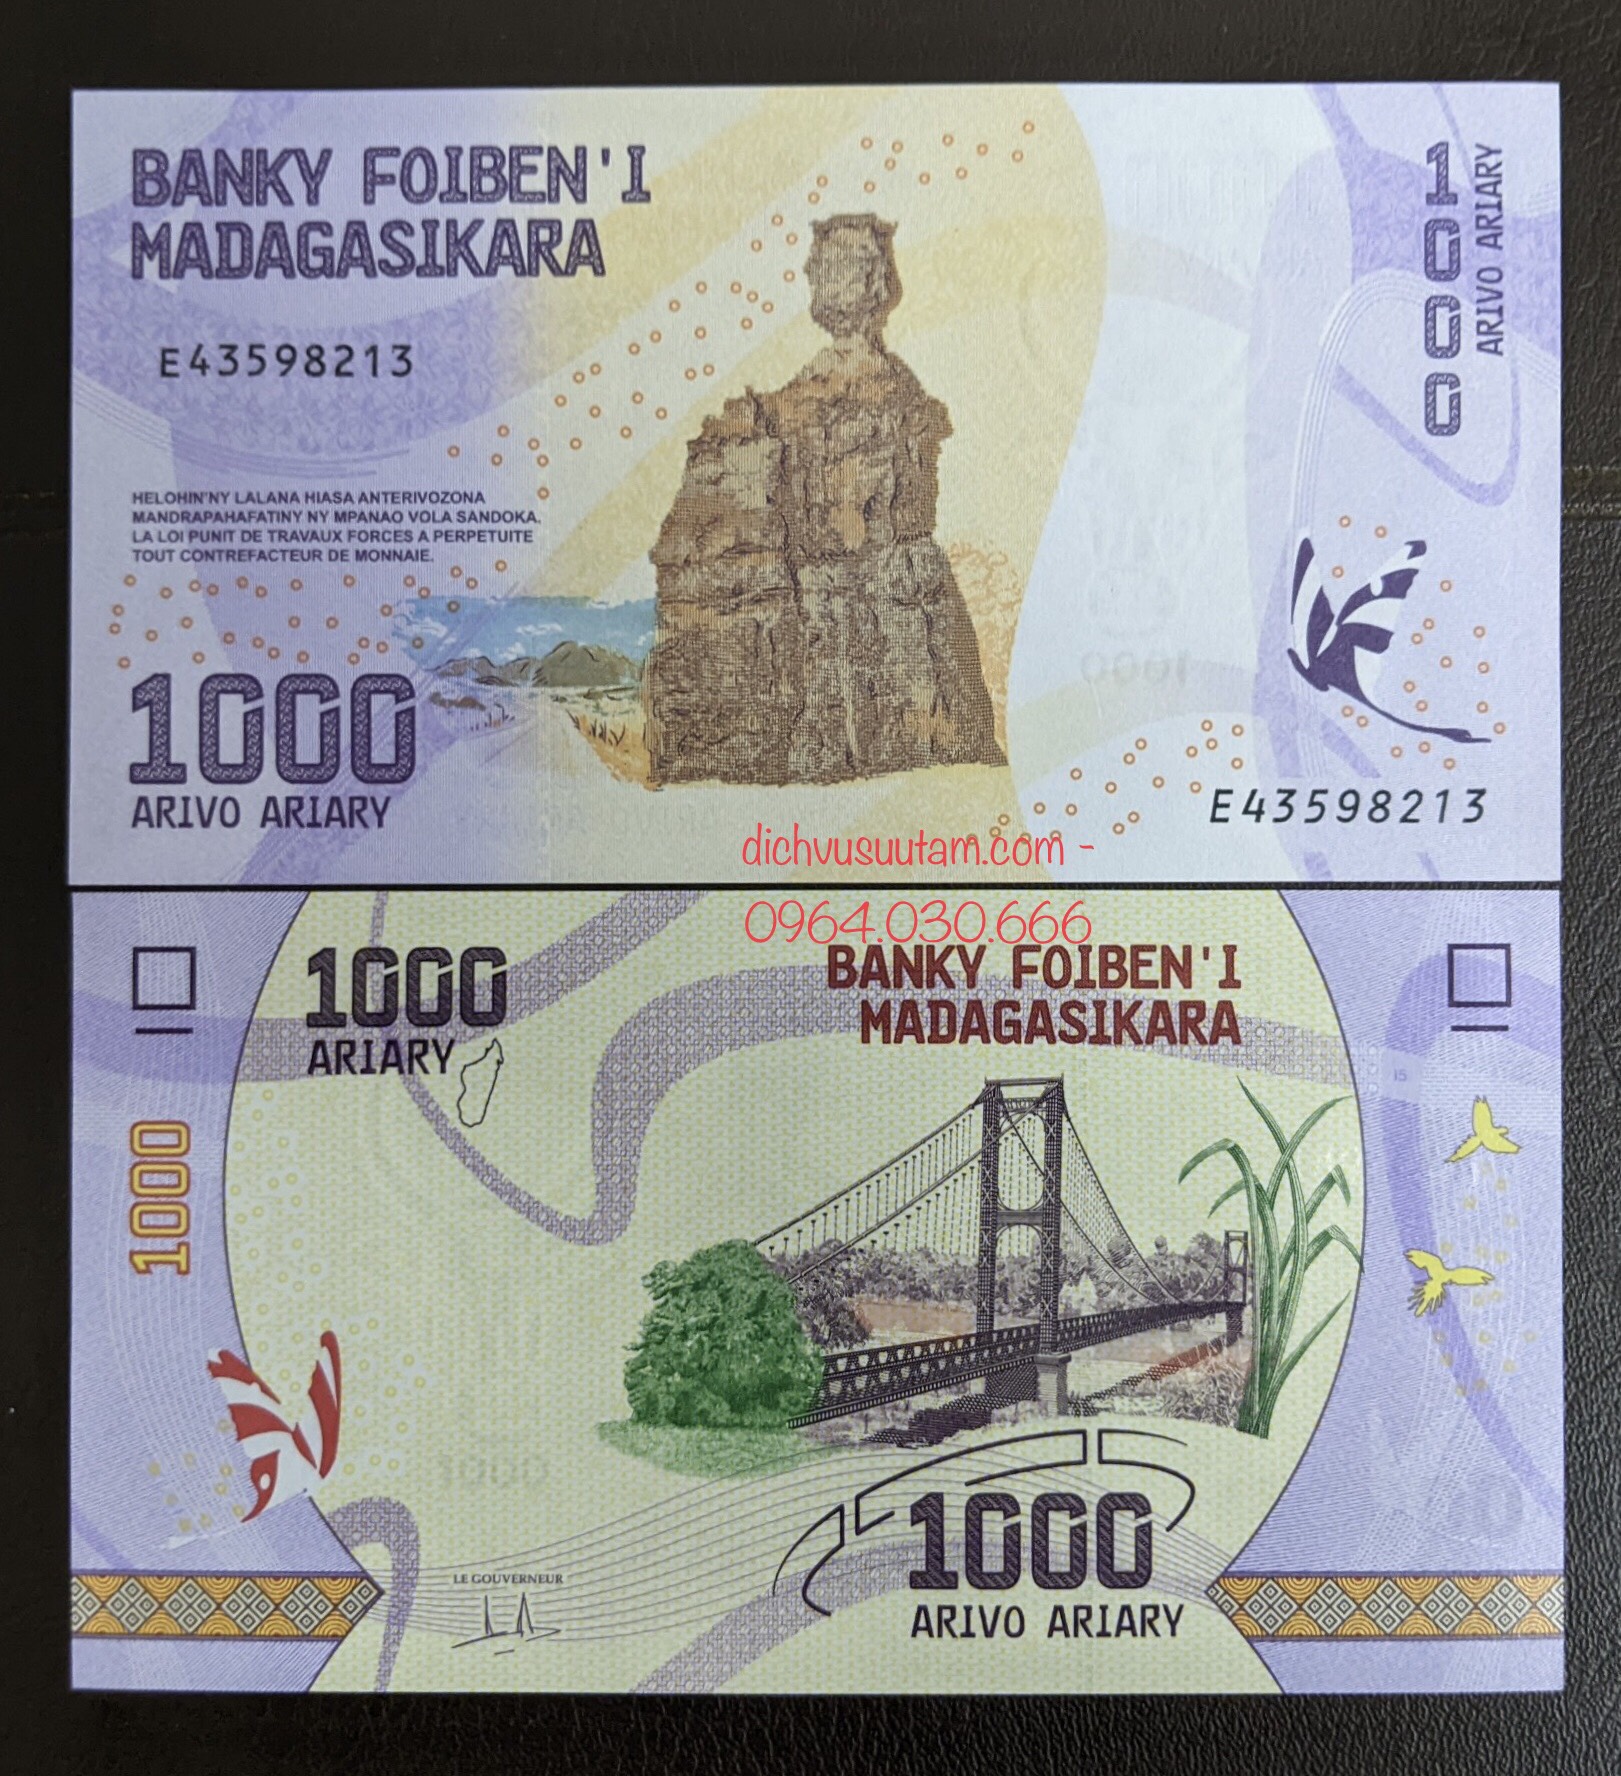 Tiền châu Phi sưu tầm 1000 ariary quốc đảo Madagascar